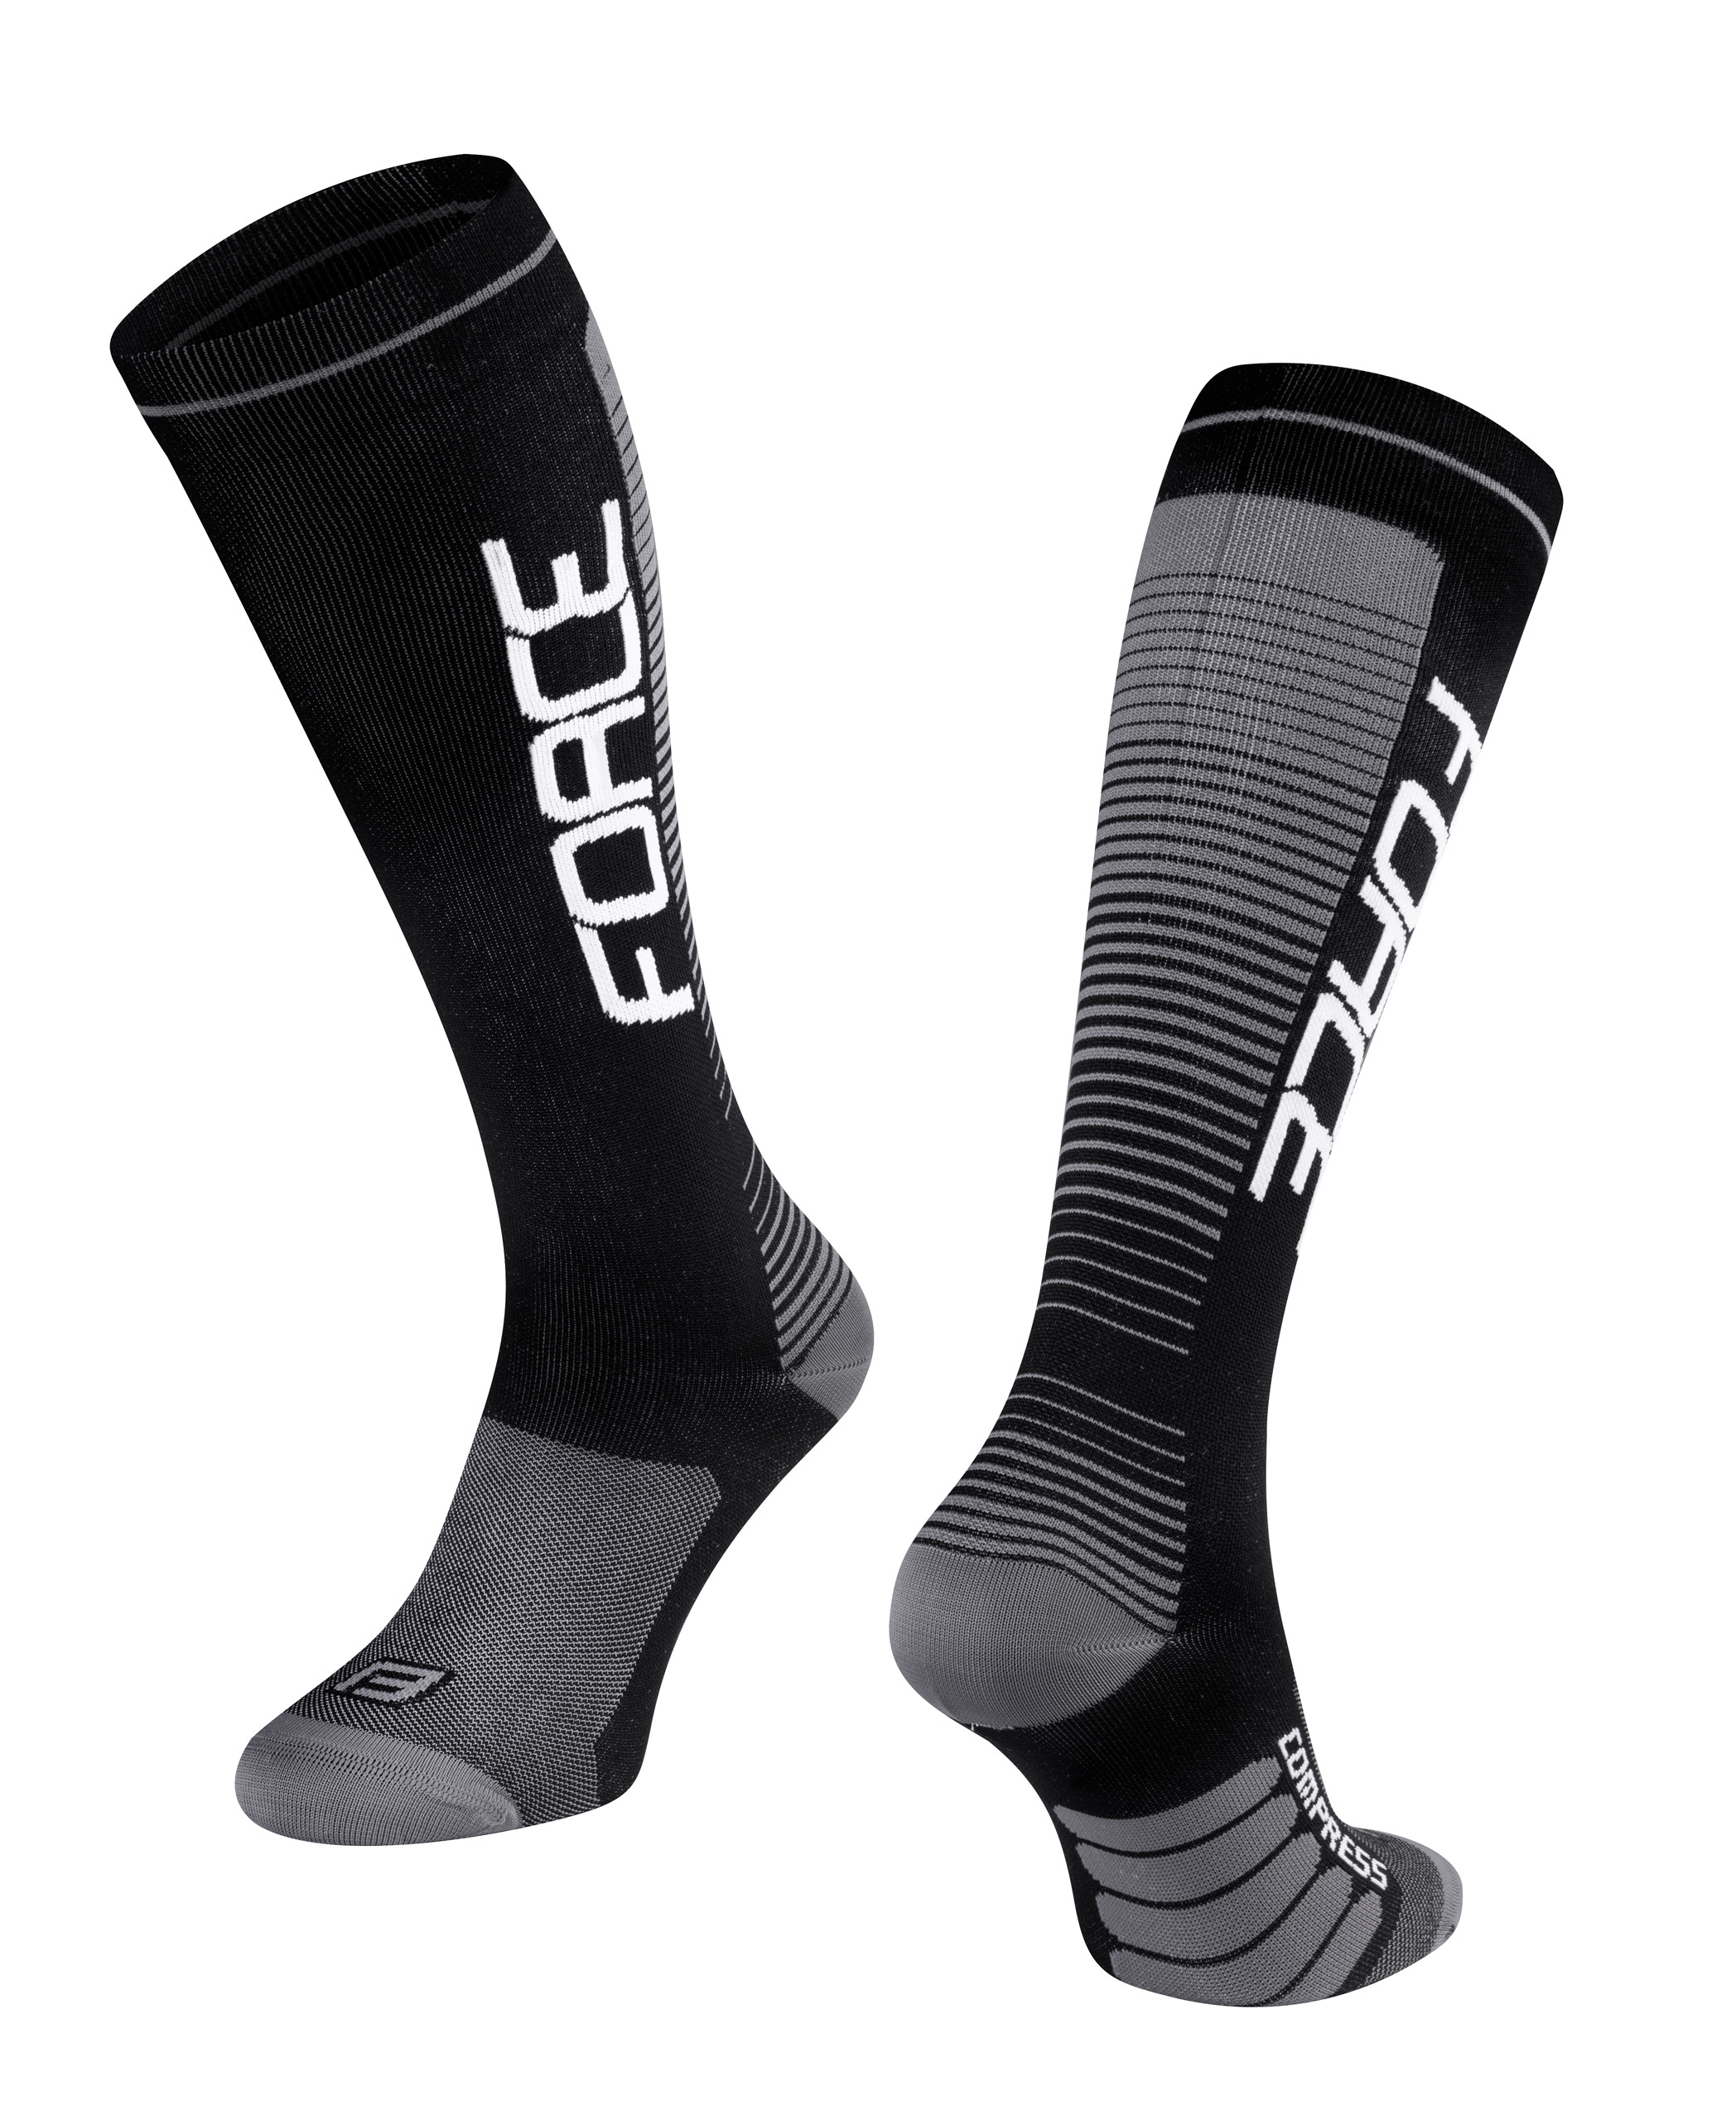 ponožky F COMPRESS, černo-šedé S-M/36-41